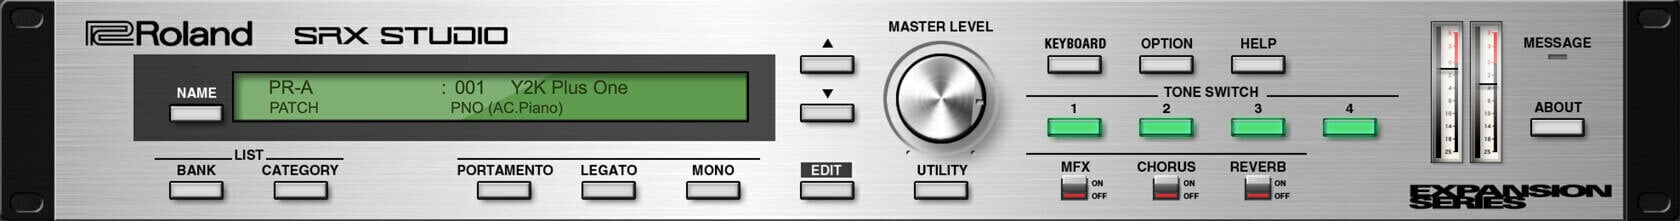 Logiciel de studio Instruments virtuels Roland SRX STUDIO Key (Produit numérique)